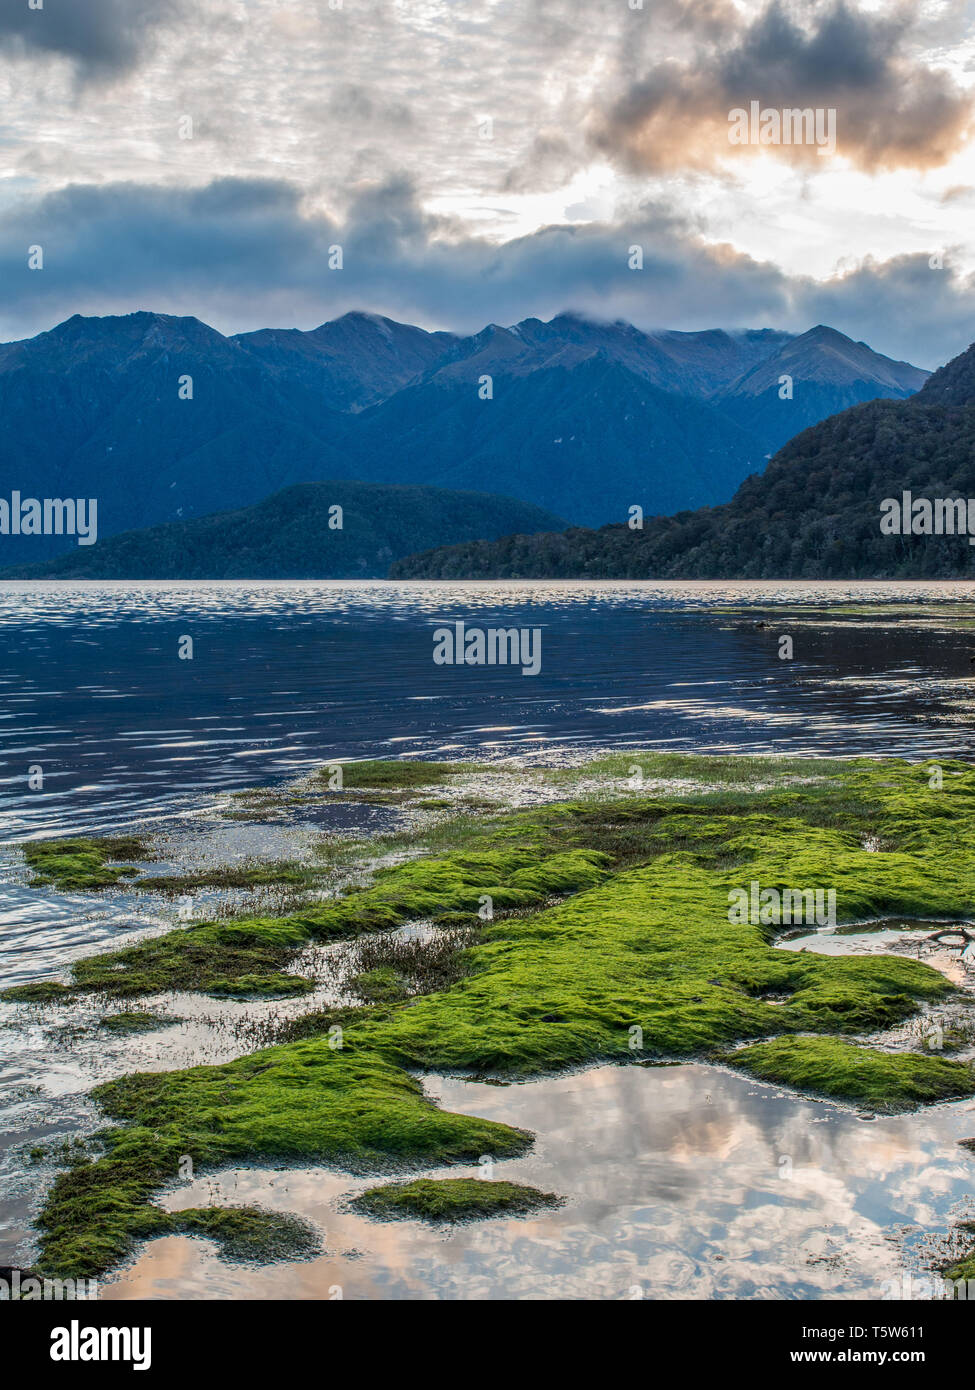 Piante verdi, nuvole riflettono chiaramente in acque calme, scuro salire sulle montagne in distanza, Lago Hauroko, Parco Nazionale di Fiordland, Southland, Nuova Zelanda Foto Stock